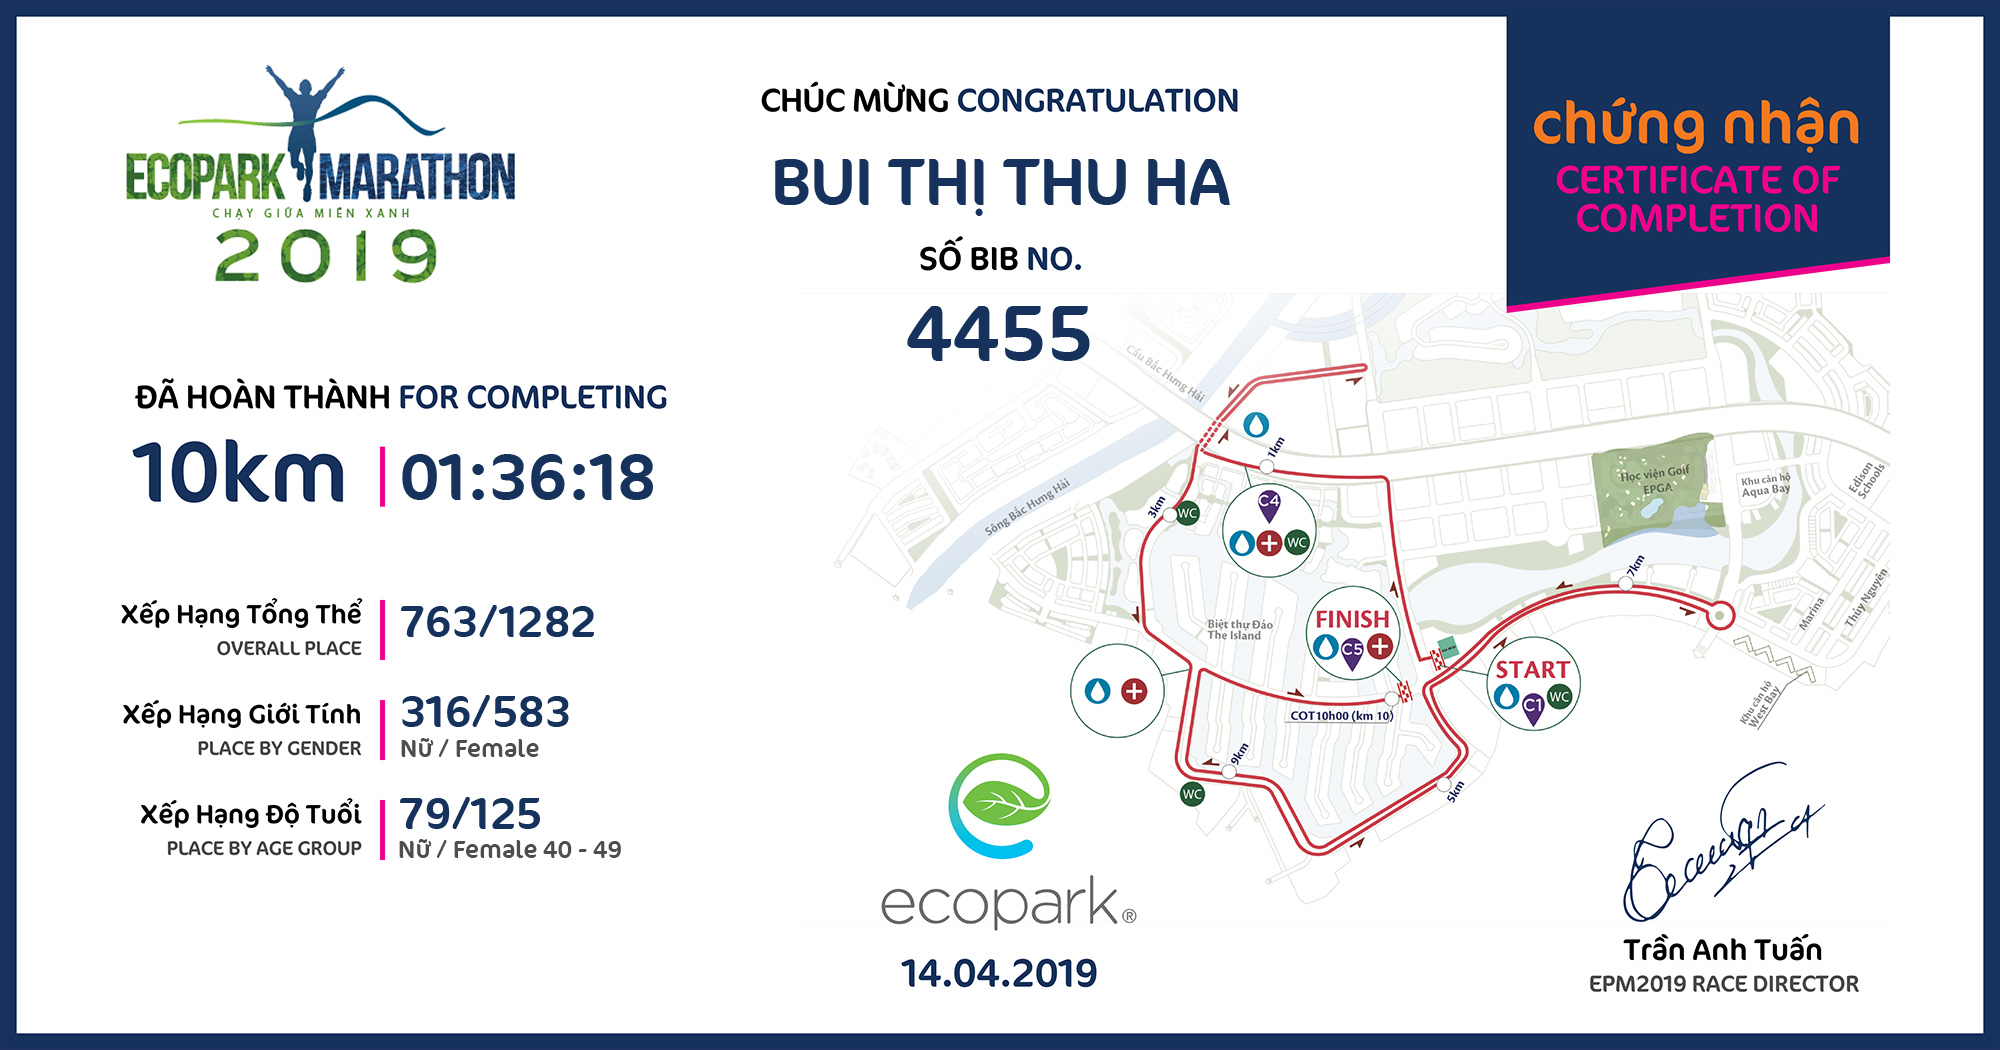 4455 - Bui Thị Thu Ha